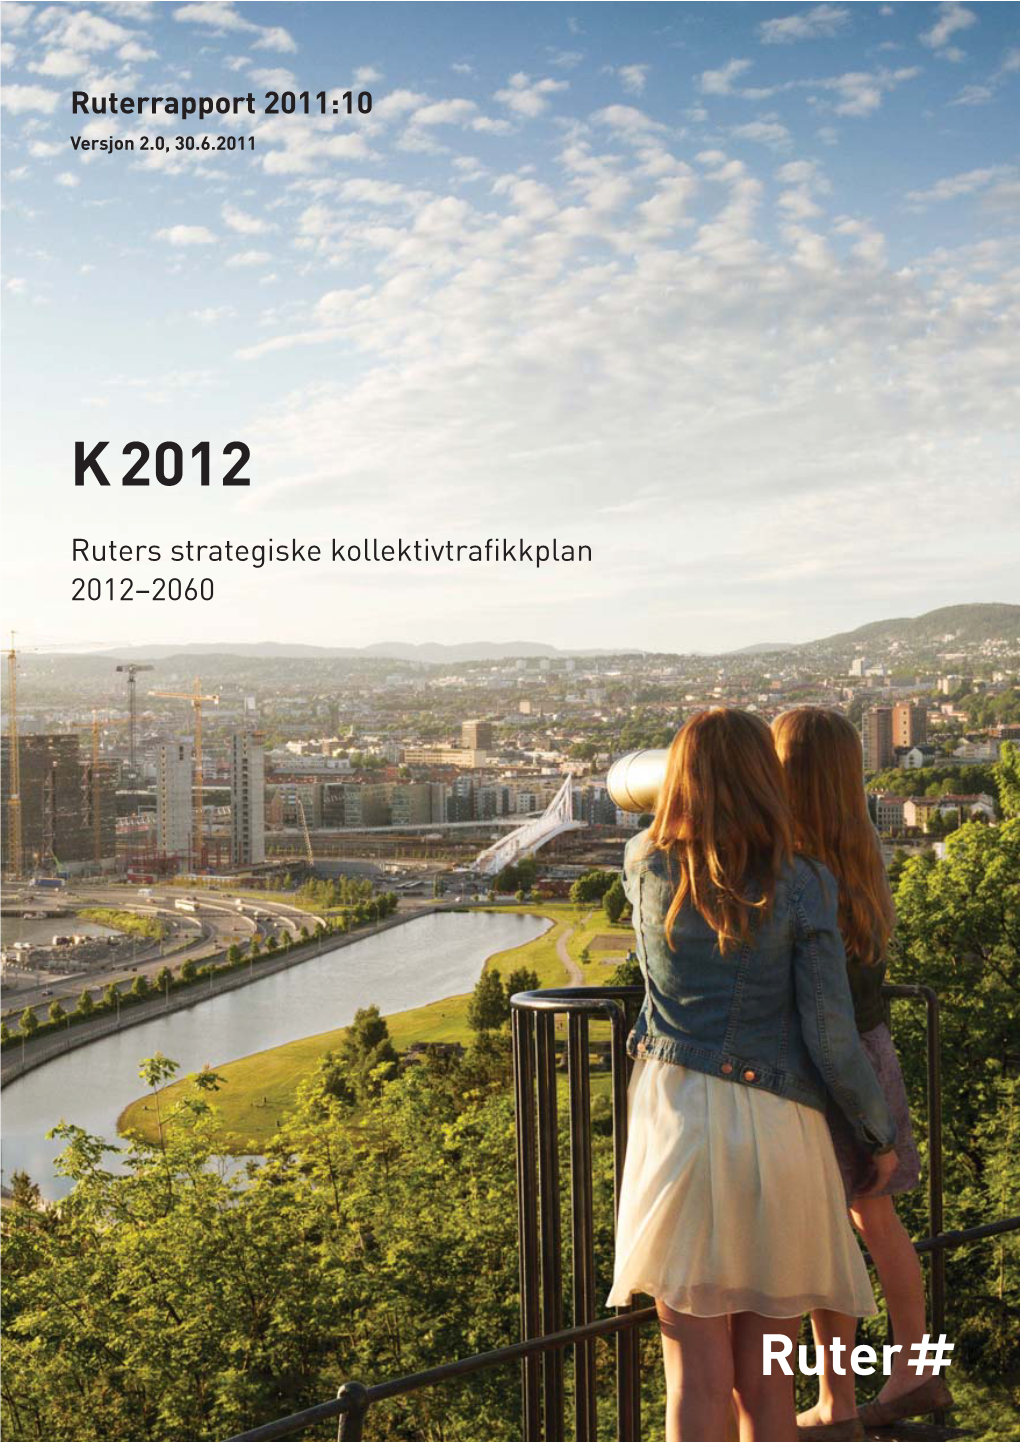 Les Ruters Strategiske Kollektivtrafikkplan K2012